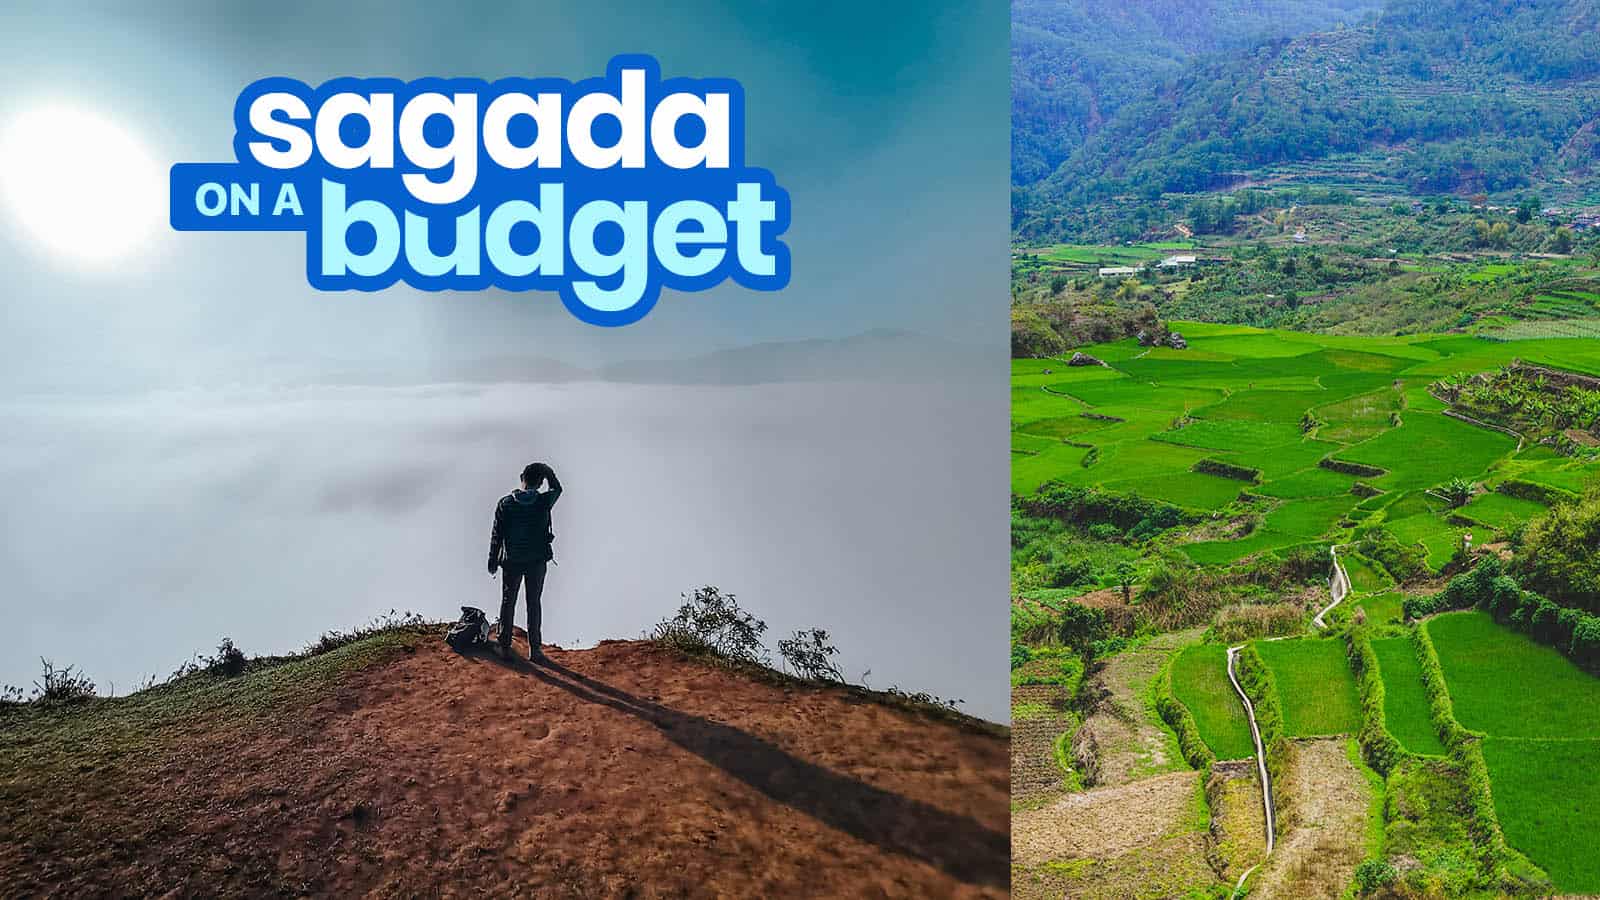 SAGADA旅游指南与预算行程